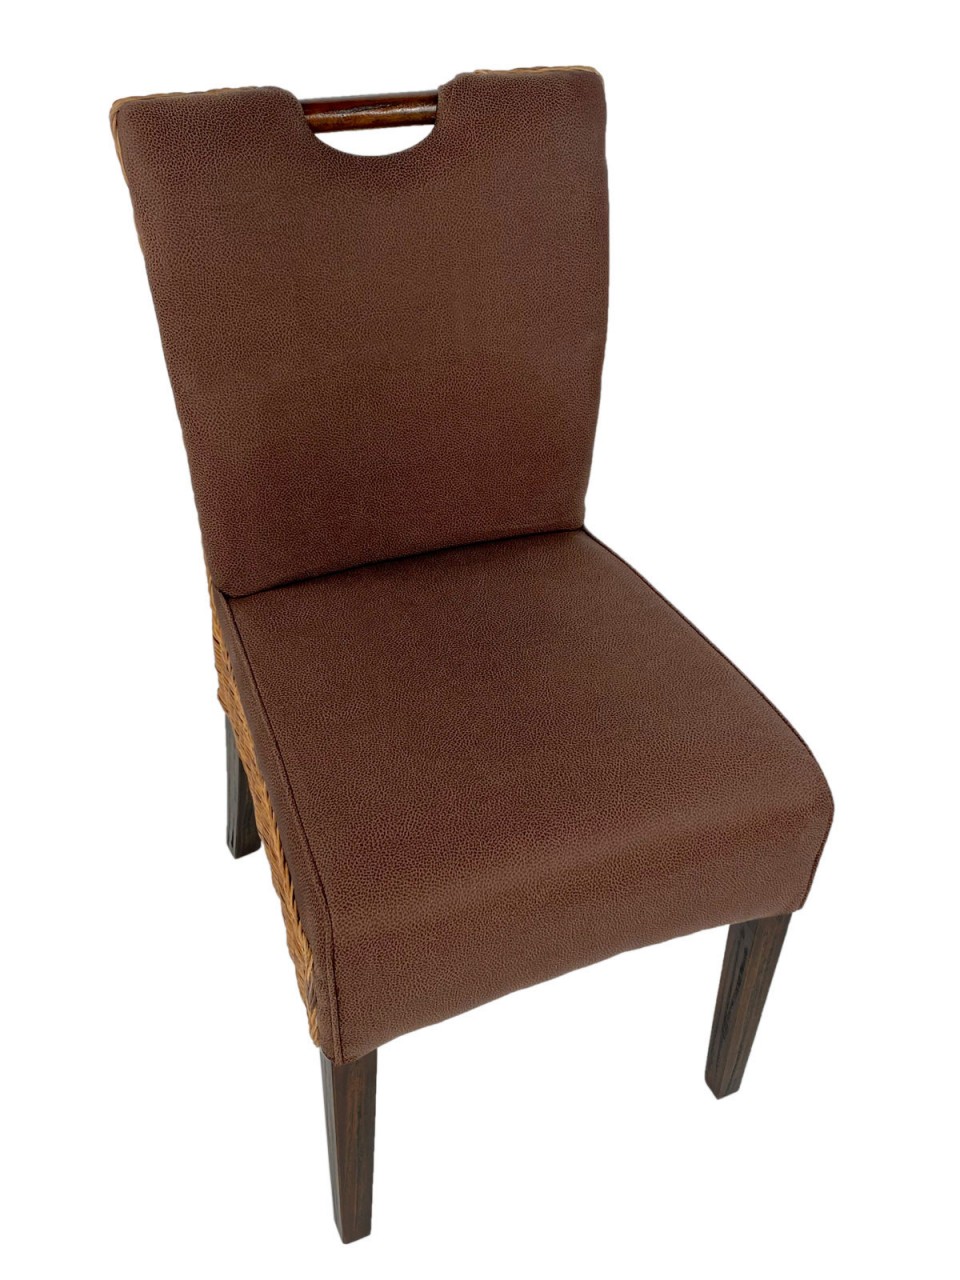 Rattanstühle Esszimmer Stühle Set 6 Stück Wintergarten Stühle Bilbao Polsterstühle prairie brown